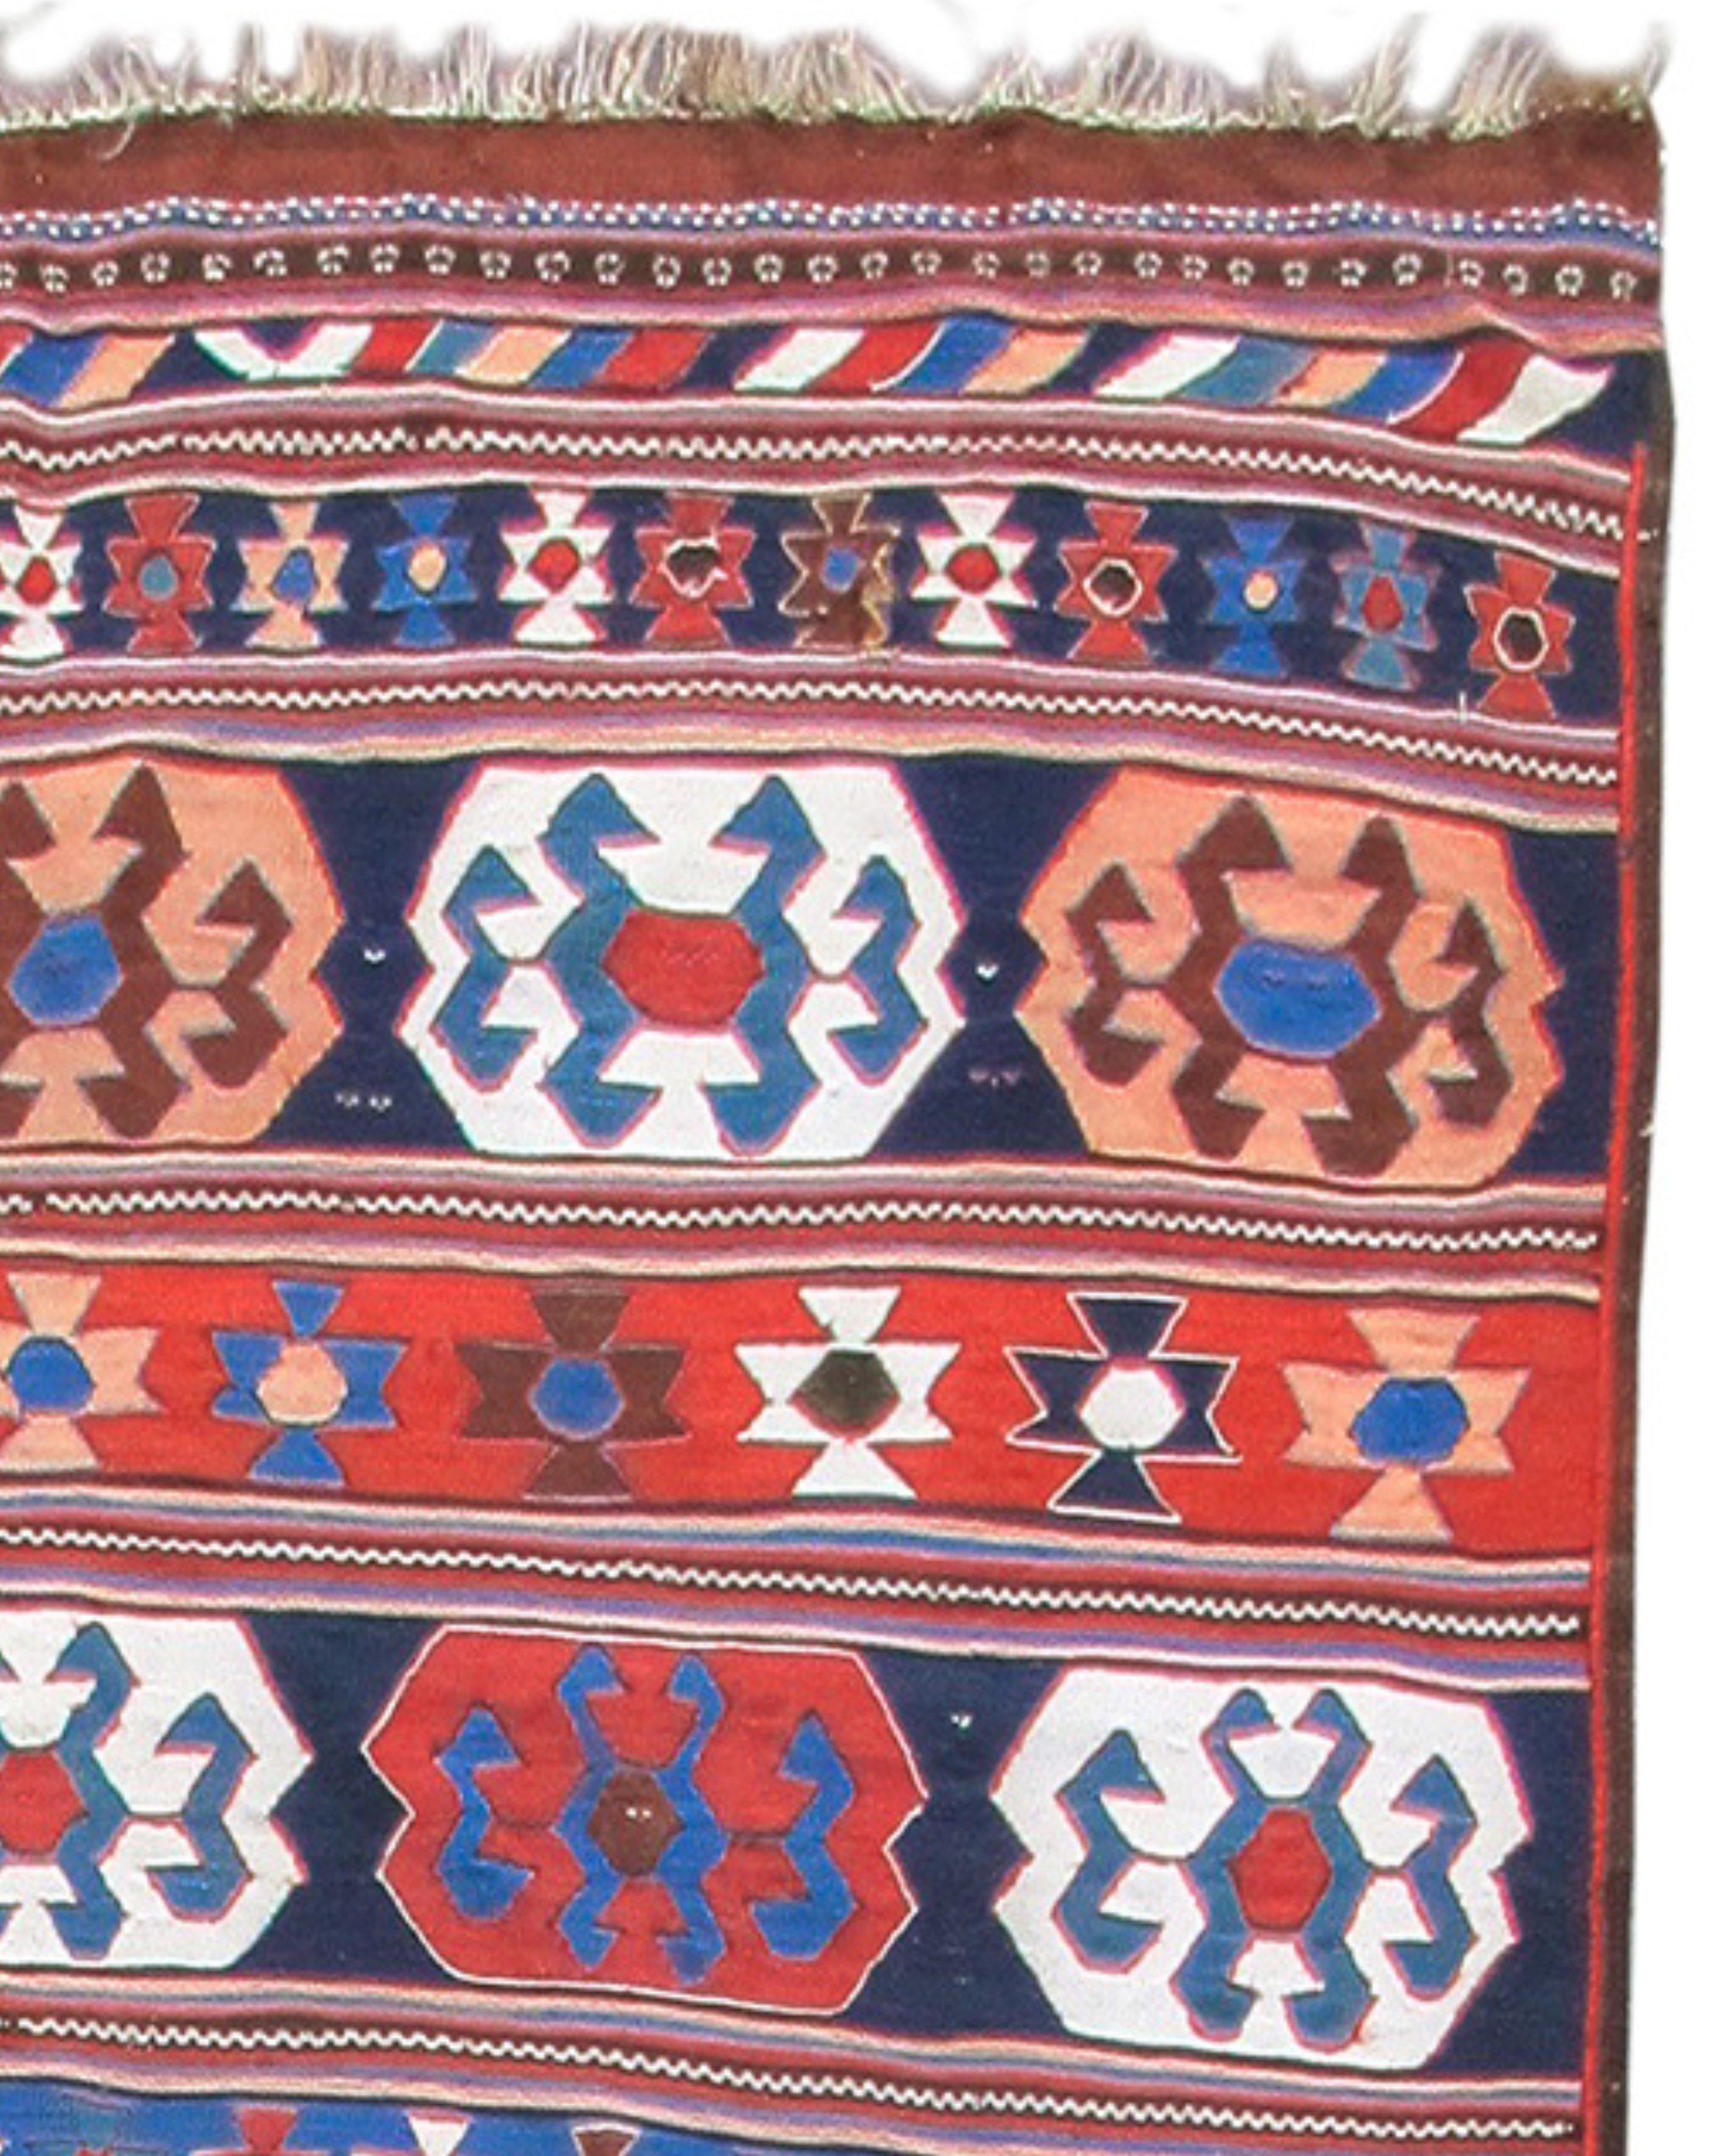 Ancien tapis persan Veramin Kilim, fin du 19e siècle

Veramin est une ancienne ville de caravanes située juste à l'extérieur de Téhéran. Au cours du XIXe siècle, divers groupes tribaux de l'ouest de la Perse se sont installés ici et se sont unis